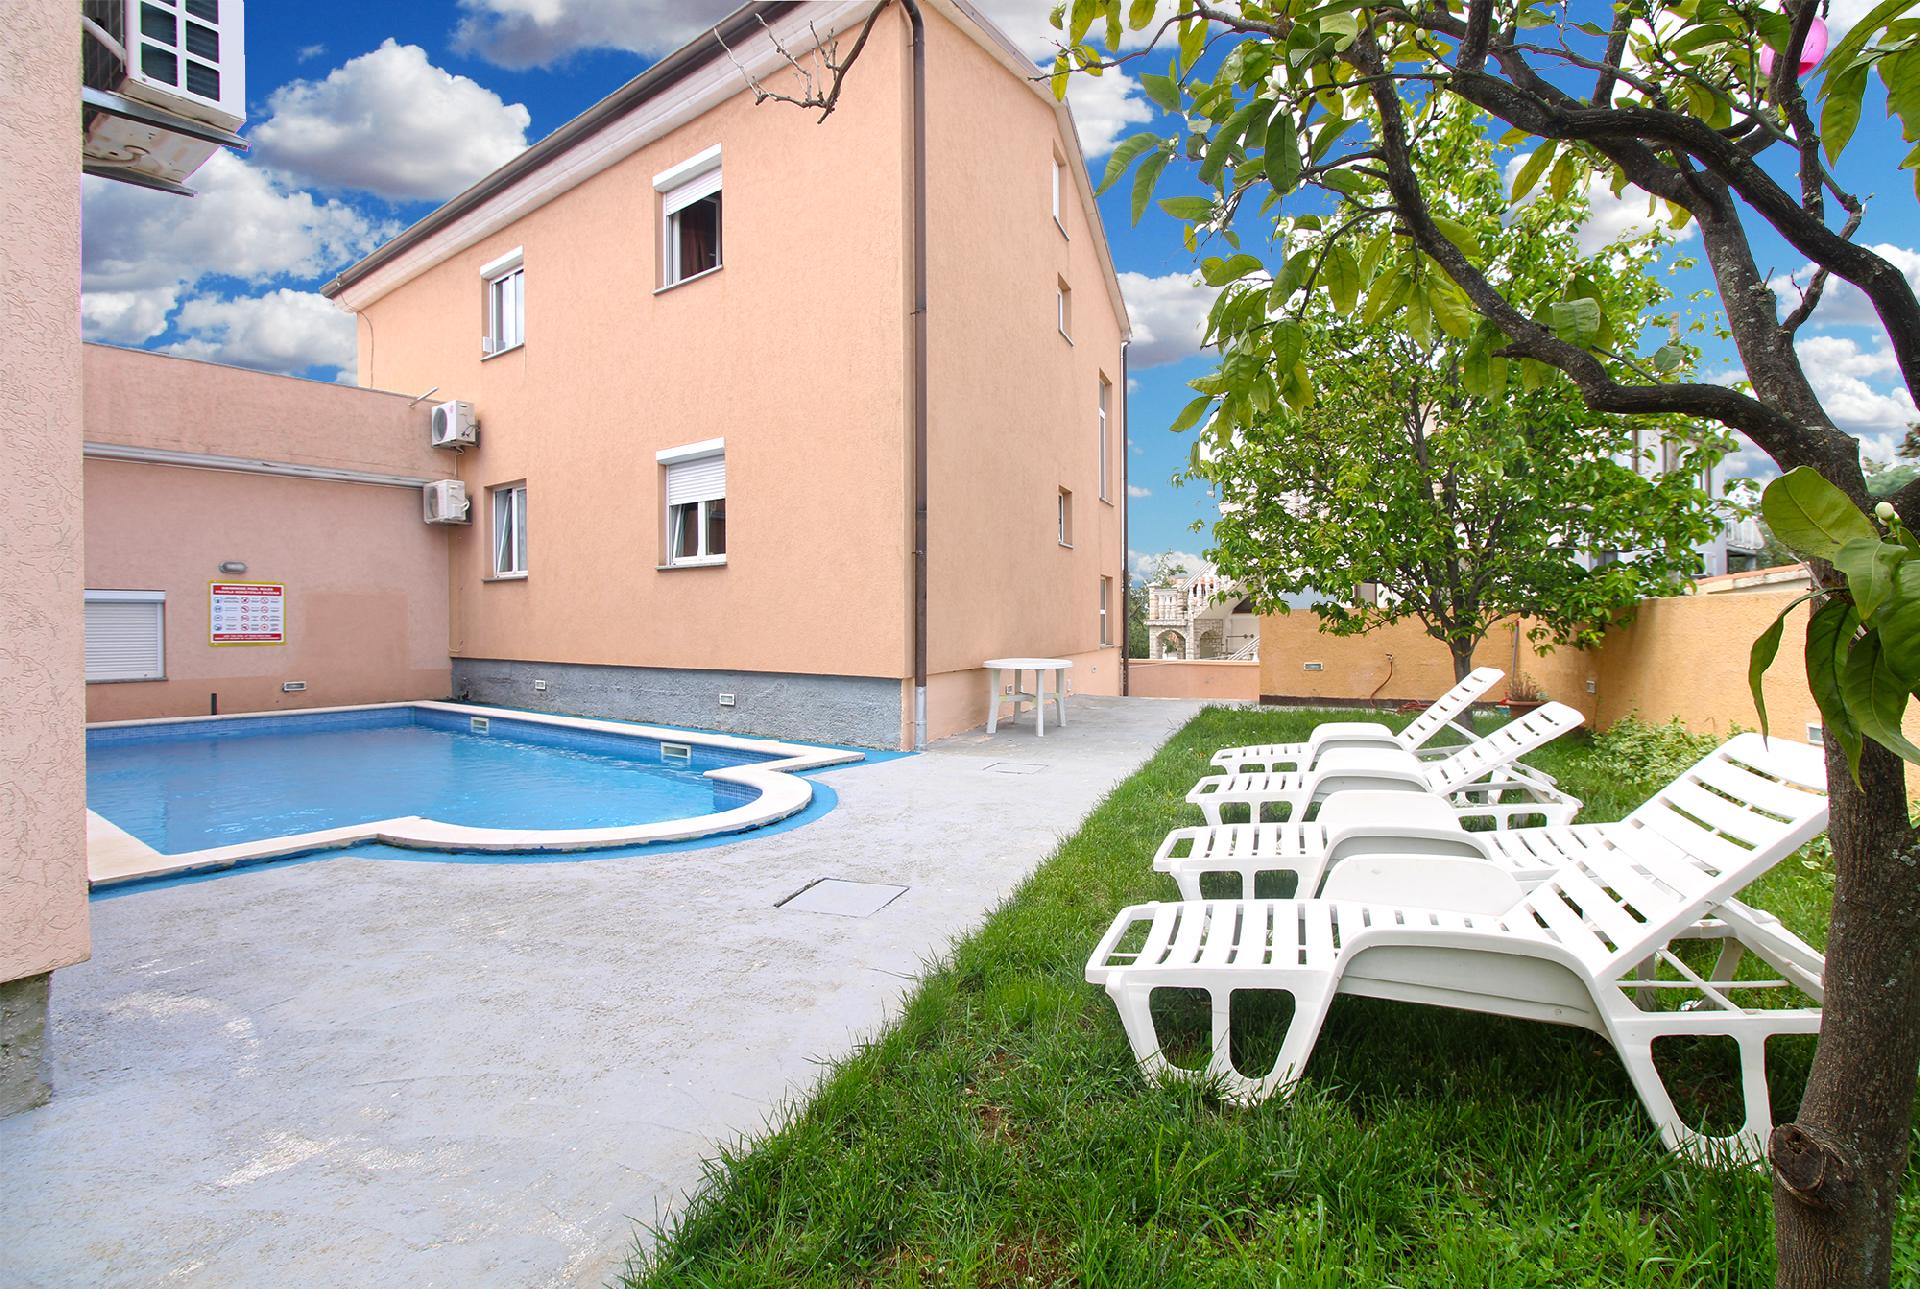 Ferienwohnung für 5 Personen ca. 76 m² i  in Kroatien